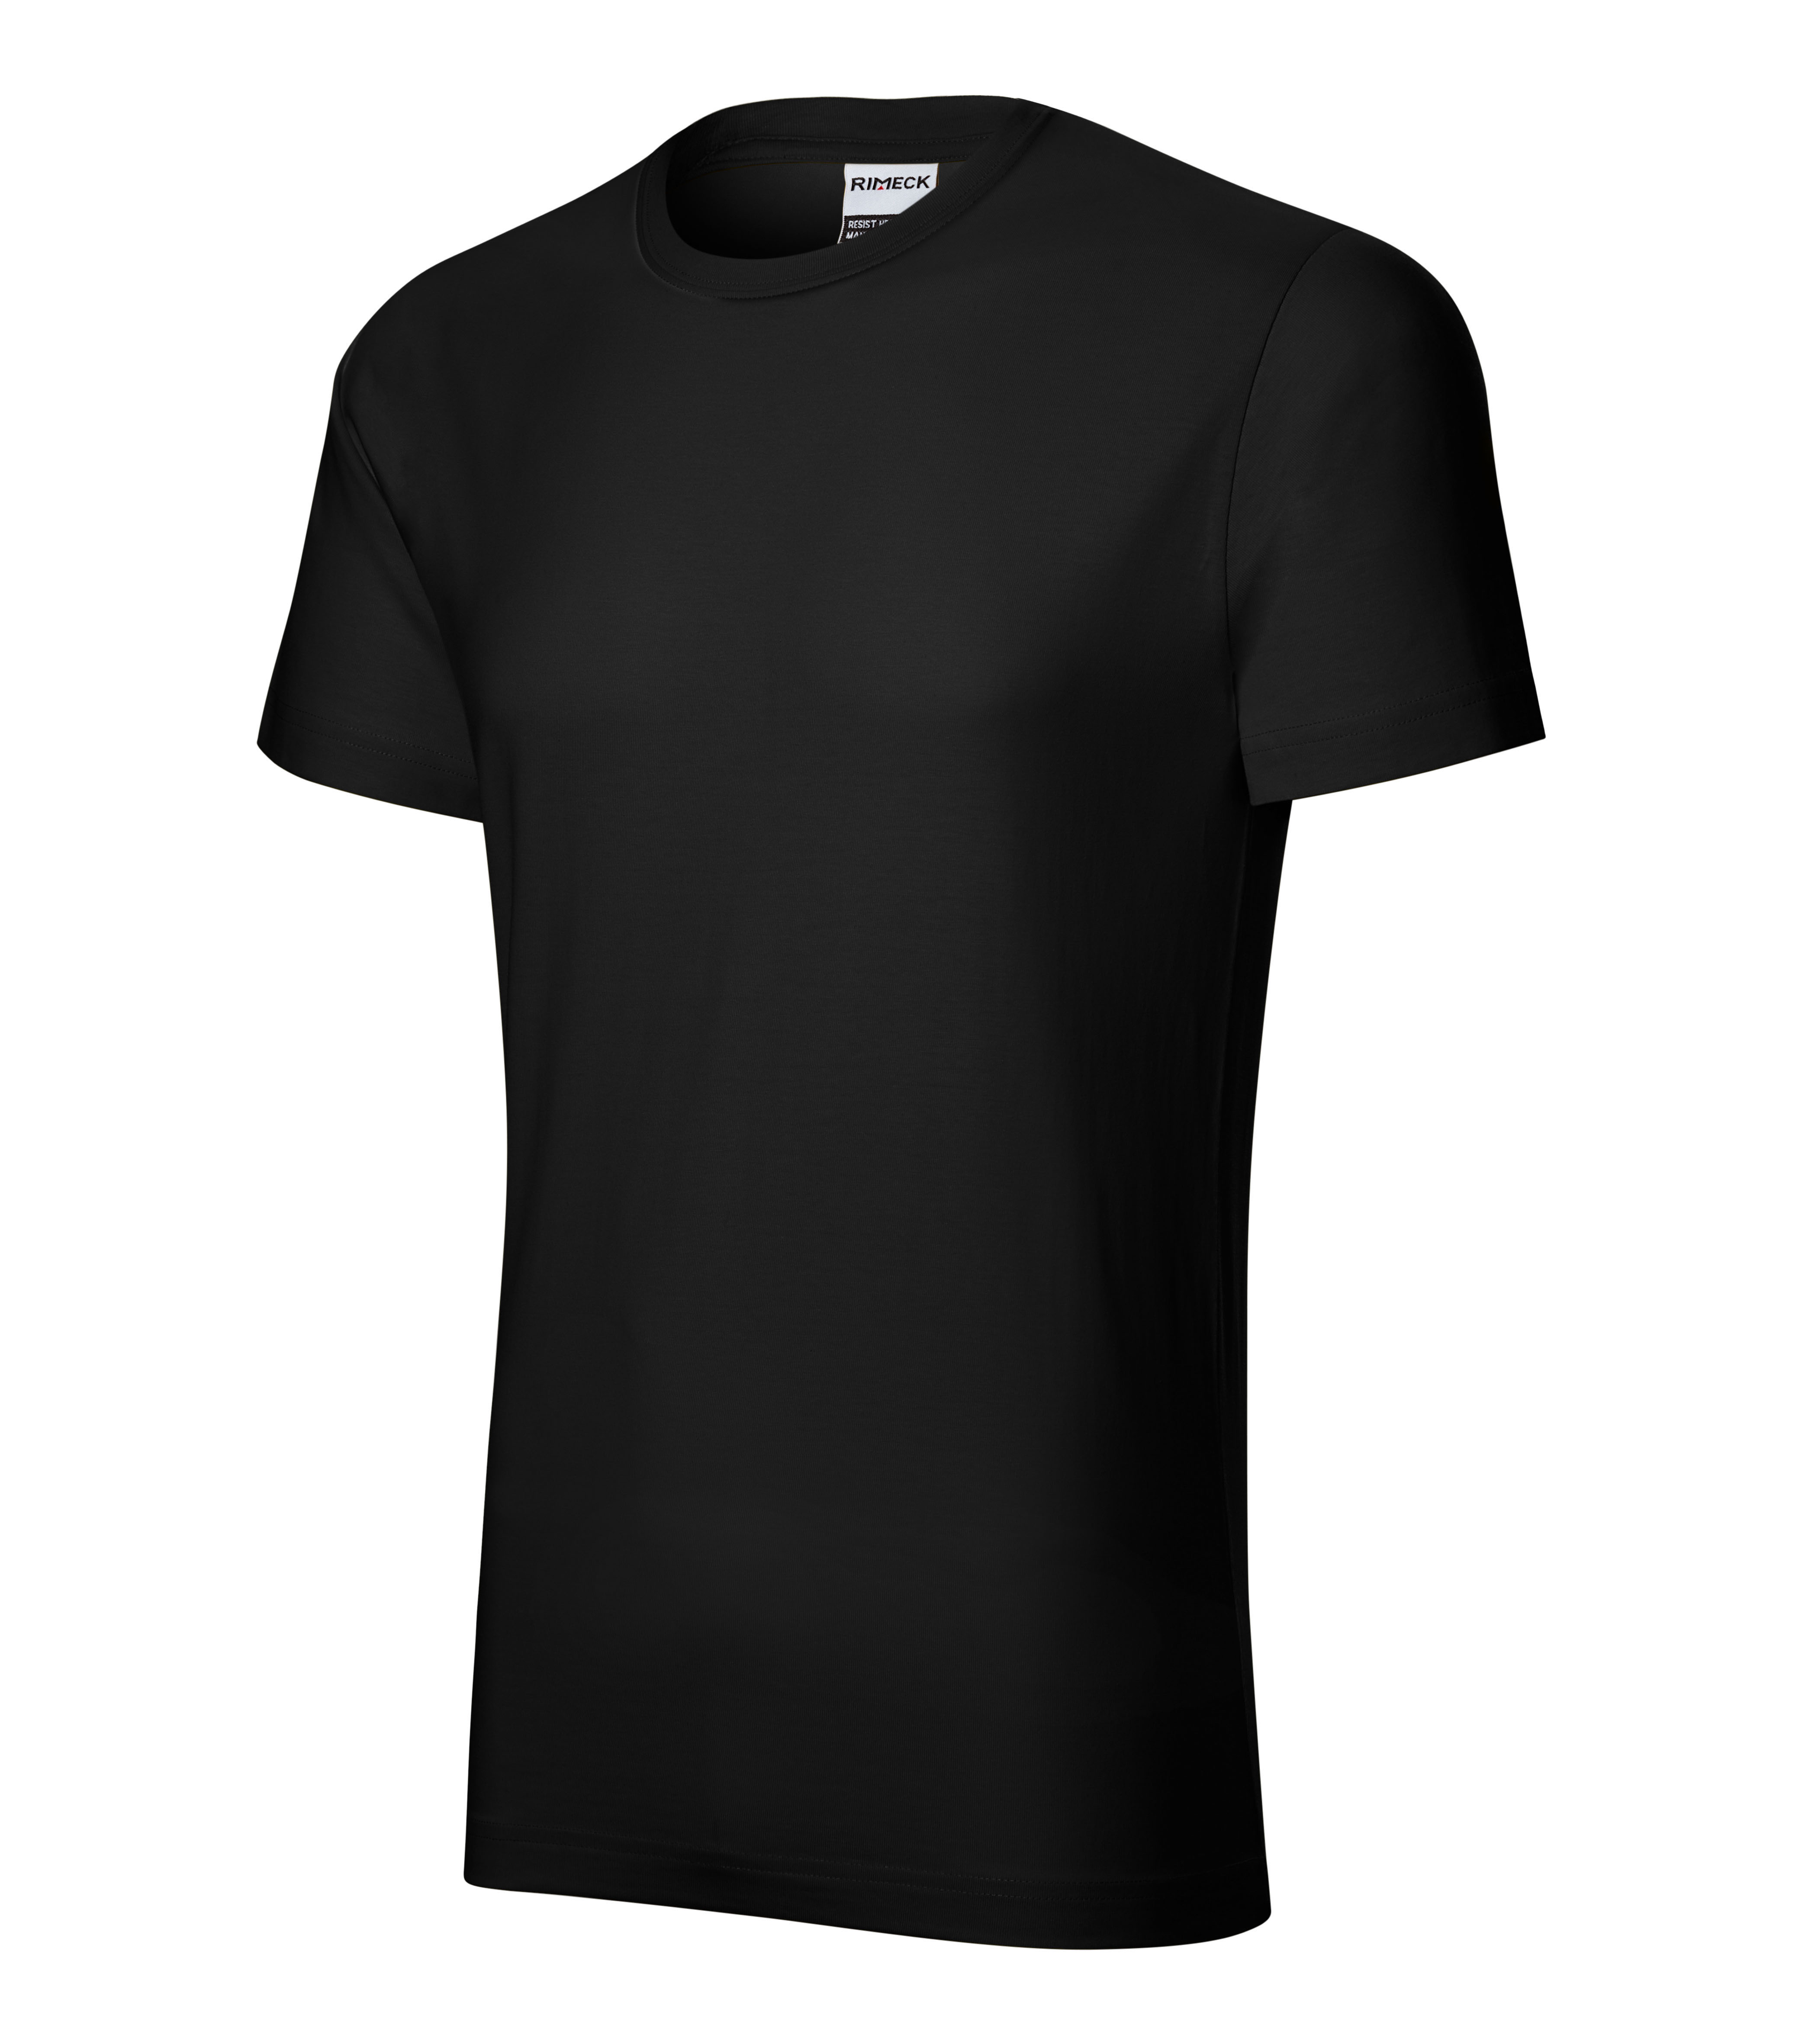 Pánské tričko s krátkým rukávem Rimeck Resist LB - černá